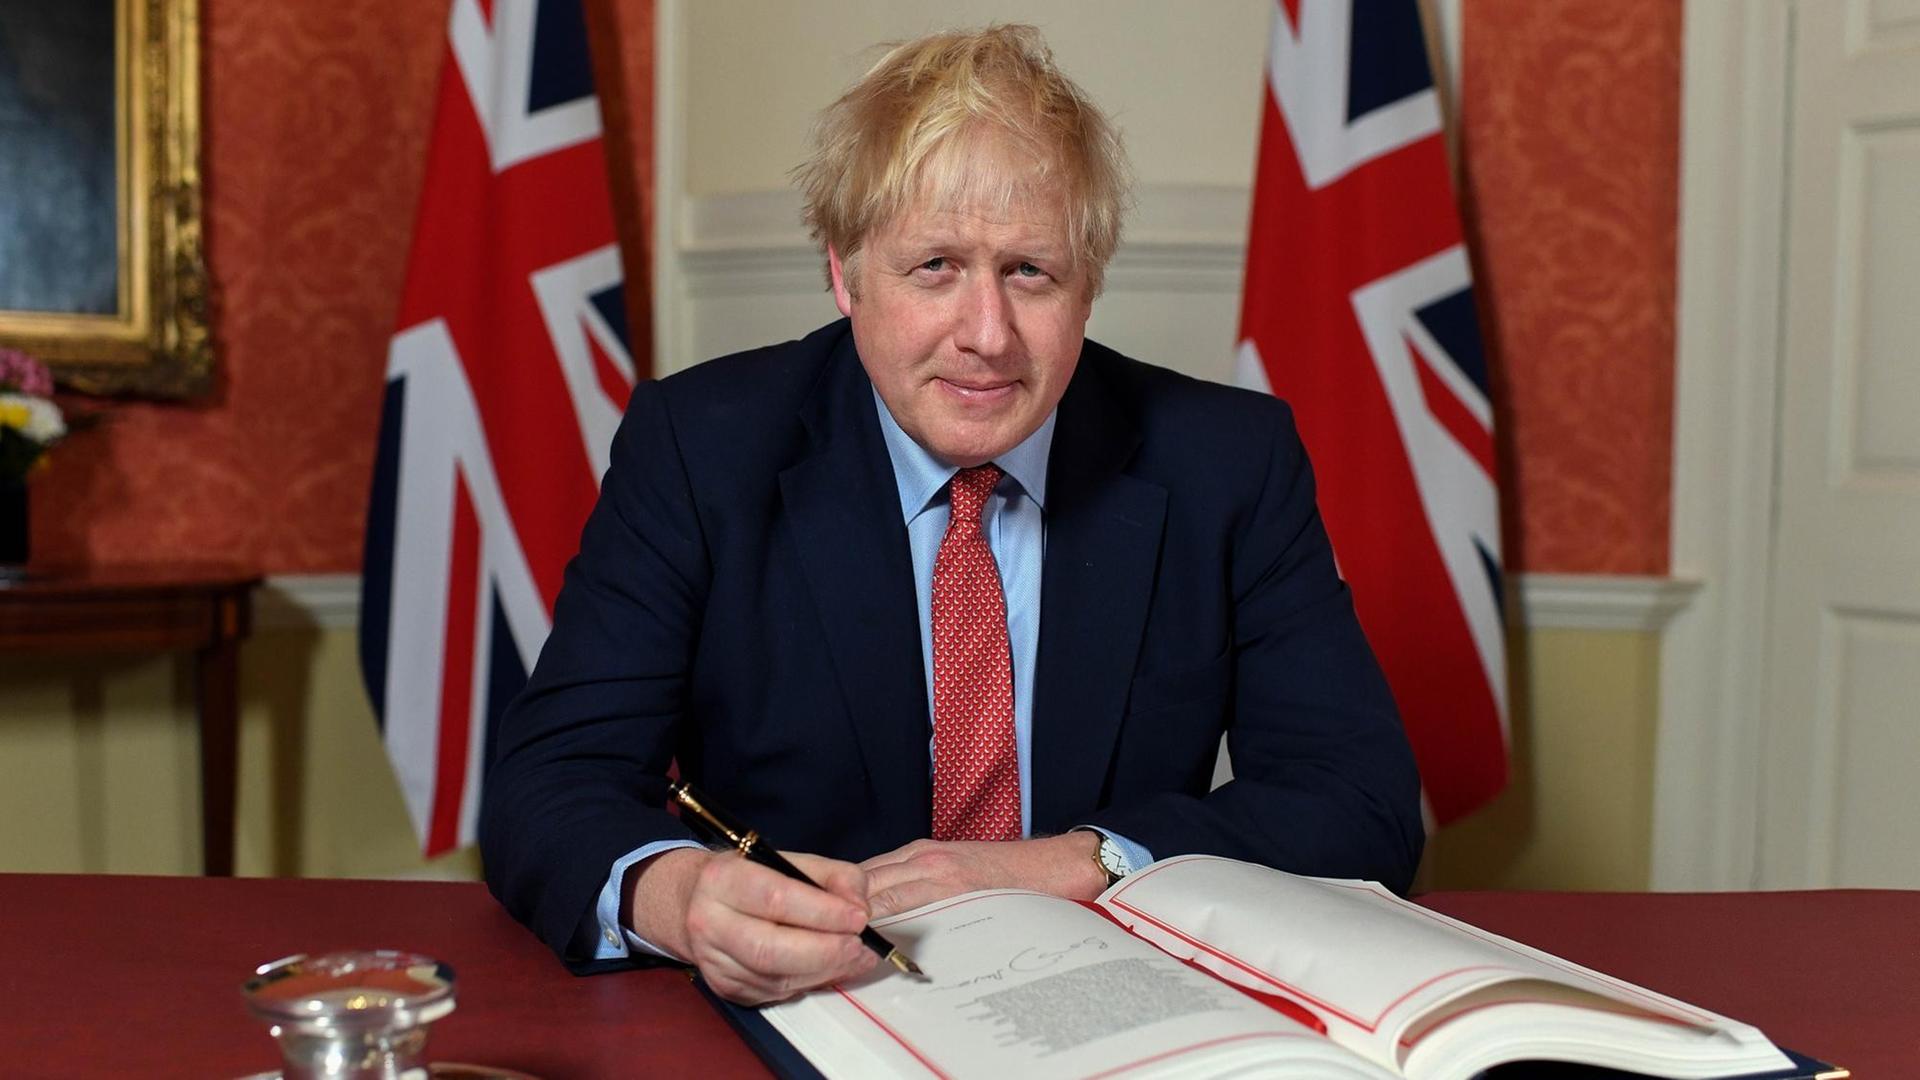 Das Bild zeigt Boris Johnson. Der Premierminister von Großbritannien unterzeichnet das EU-Austrittsabkommen